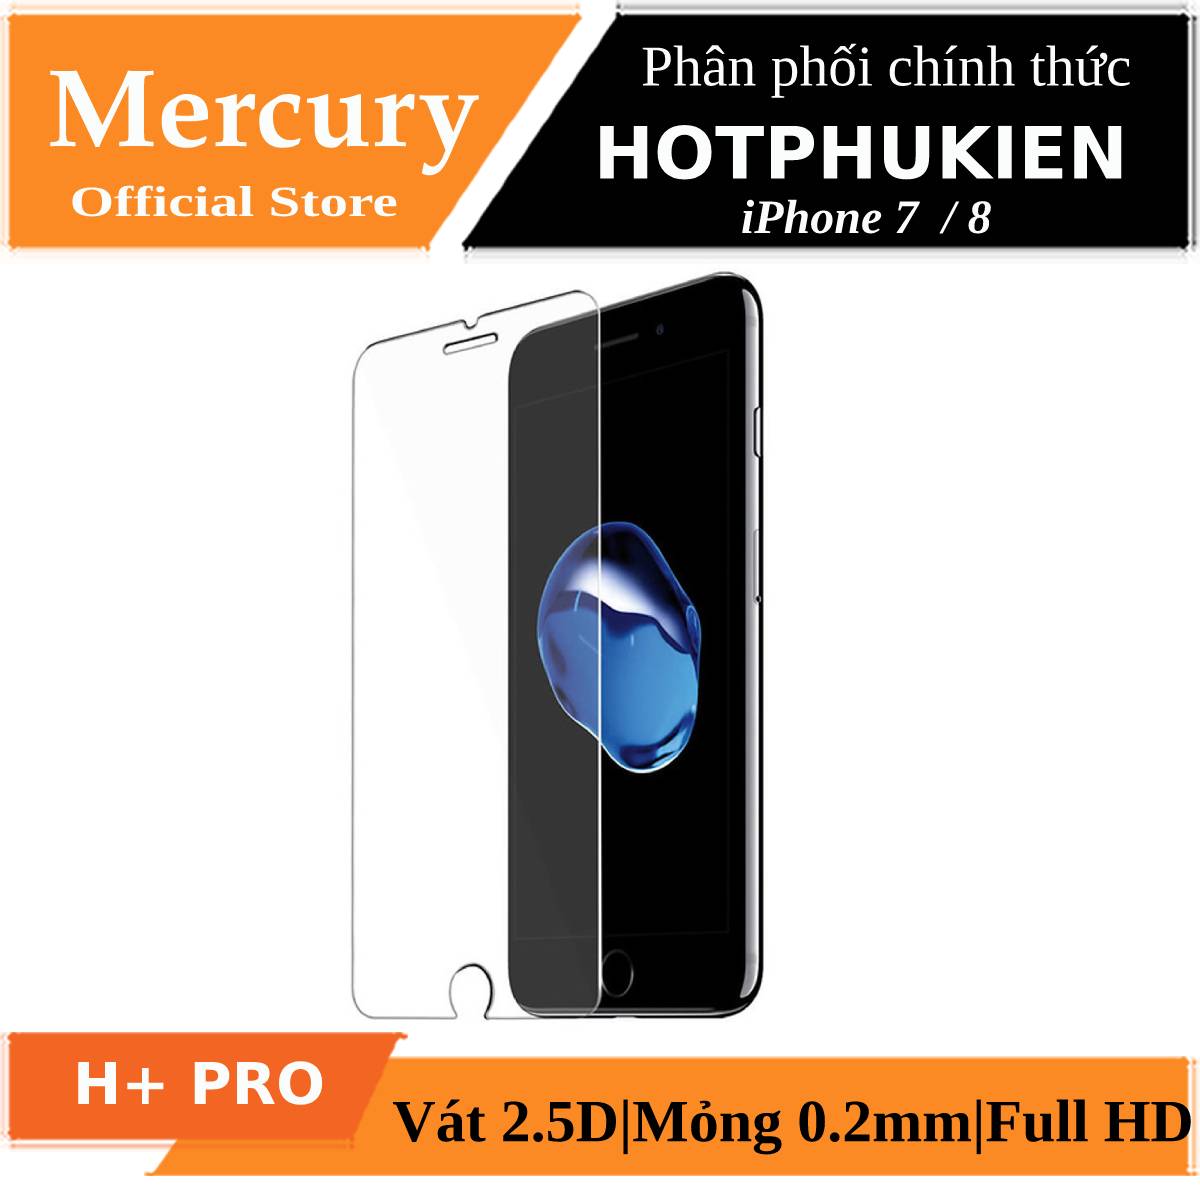 Miếng dán kính cường lực Mercury H+ Pro cho iPhone SE 2020 / iPhone 7 / iPhone 8